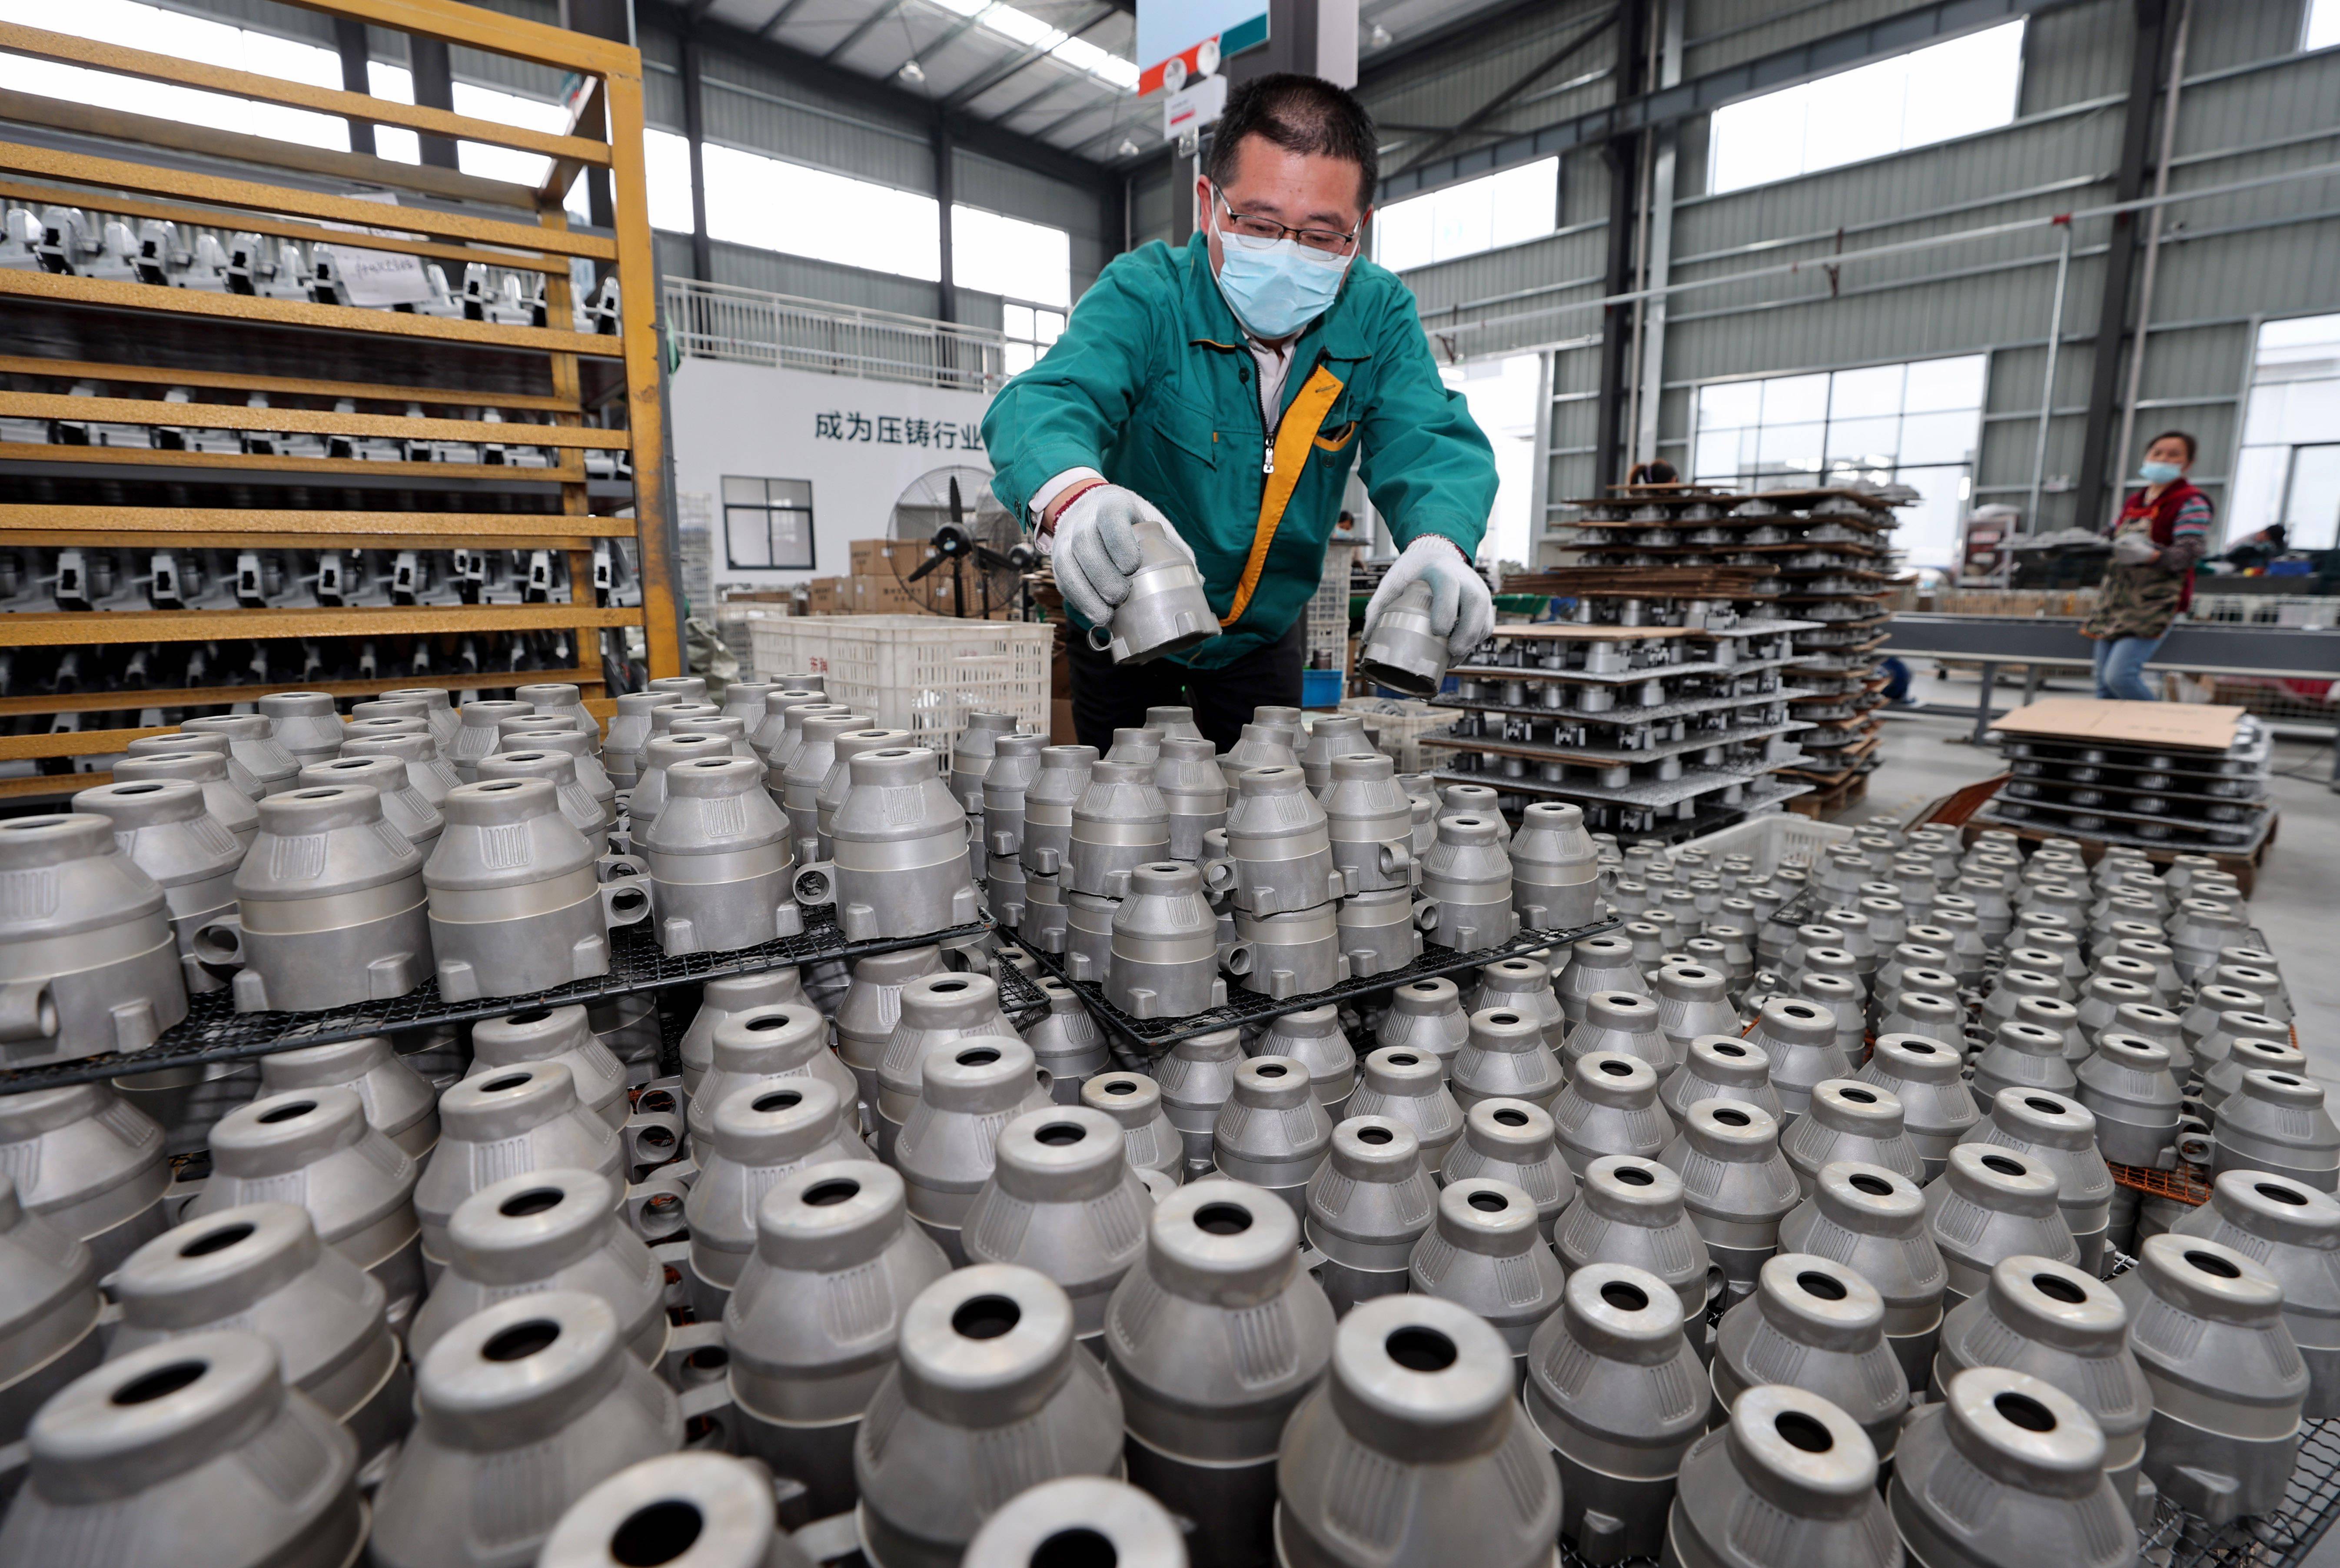 在湖南省衡阳市,特变电工衡阳变压器有限公司工人进行打磨作业